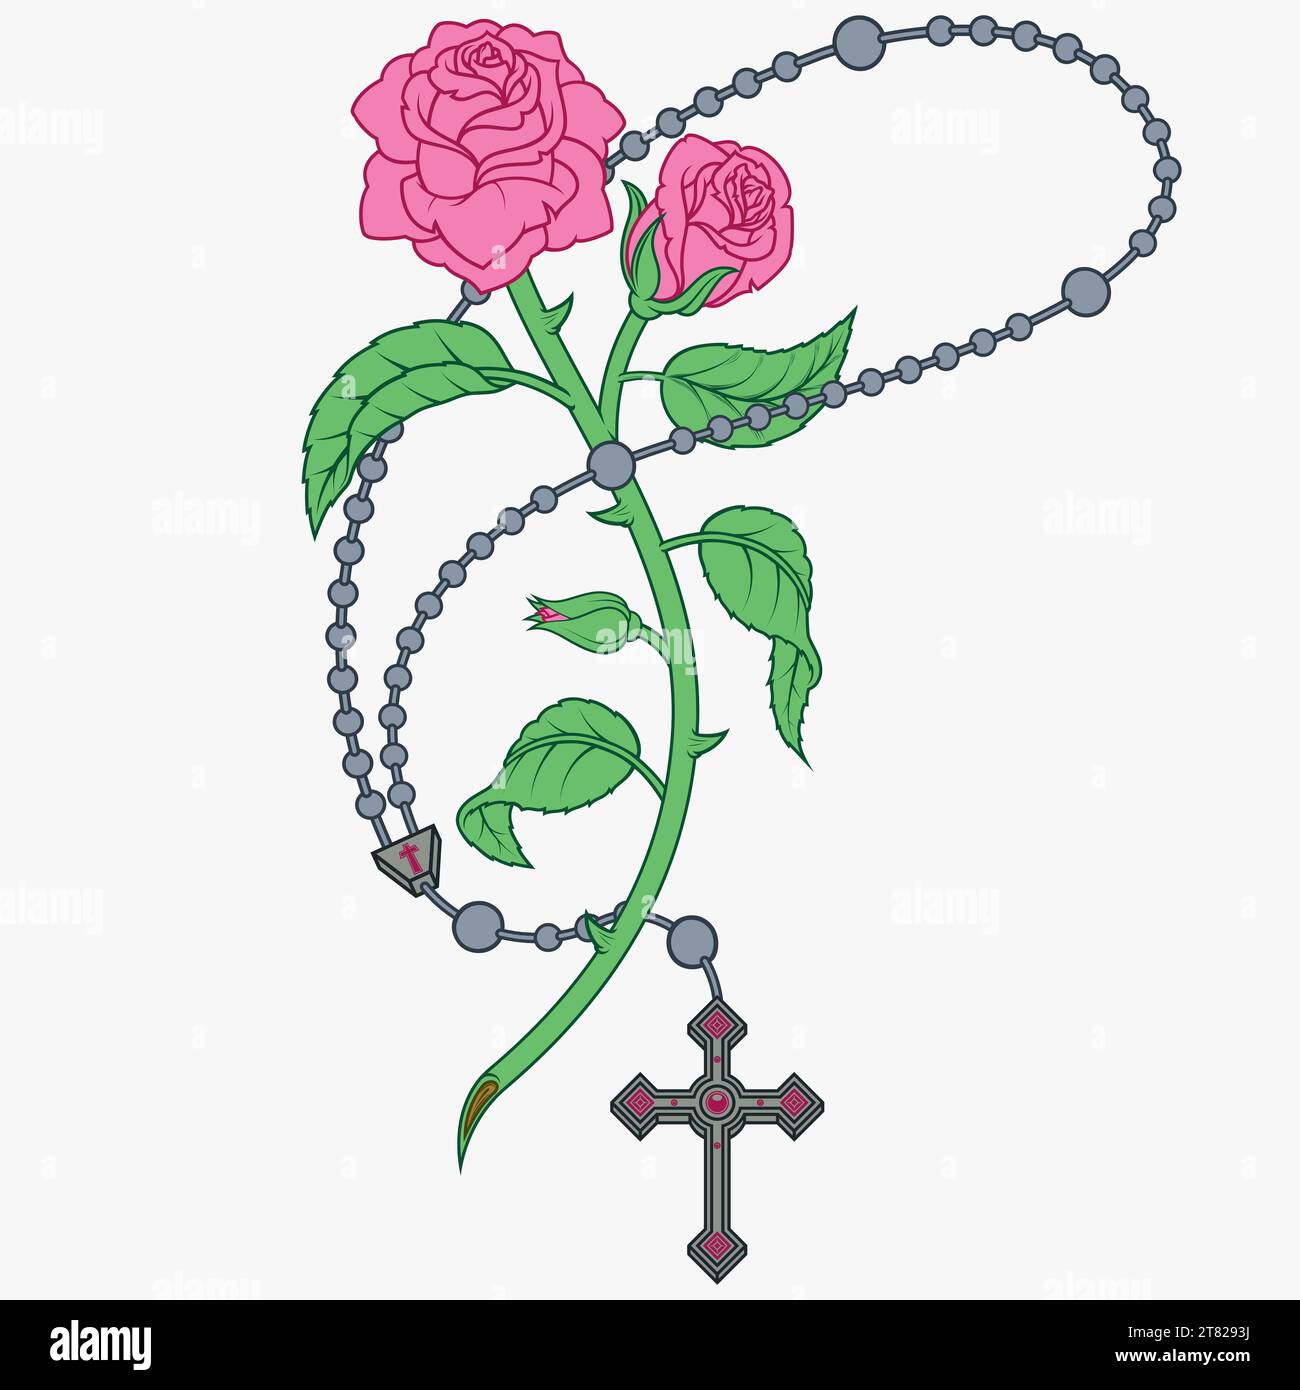 Chapelet catholique de conception vectorielle avec des roses et des pétales, symbole de la religion catholique Illustration de Vecteur